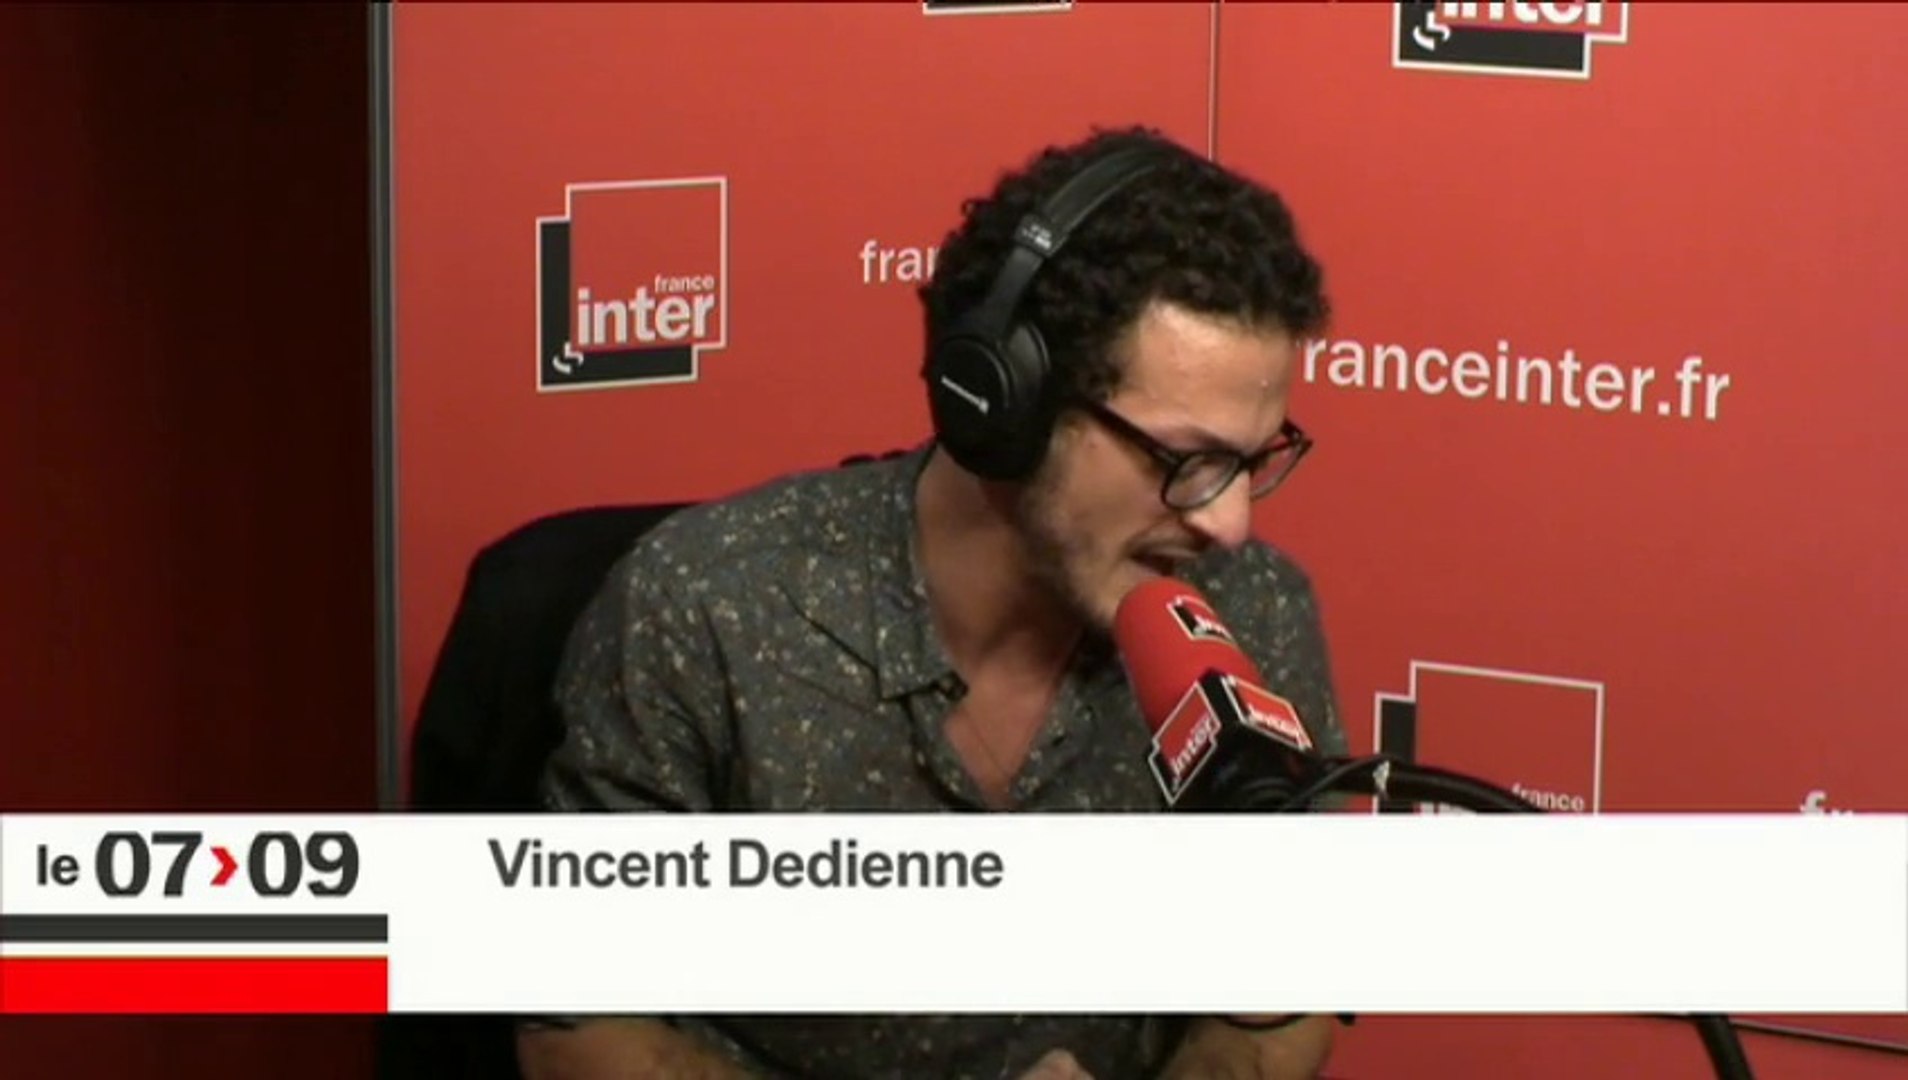 Le billet de Vincent Dedienne : "Apaise le conflit de ton rire" - Vidéo  Dailymotion